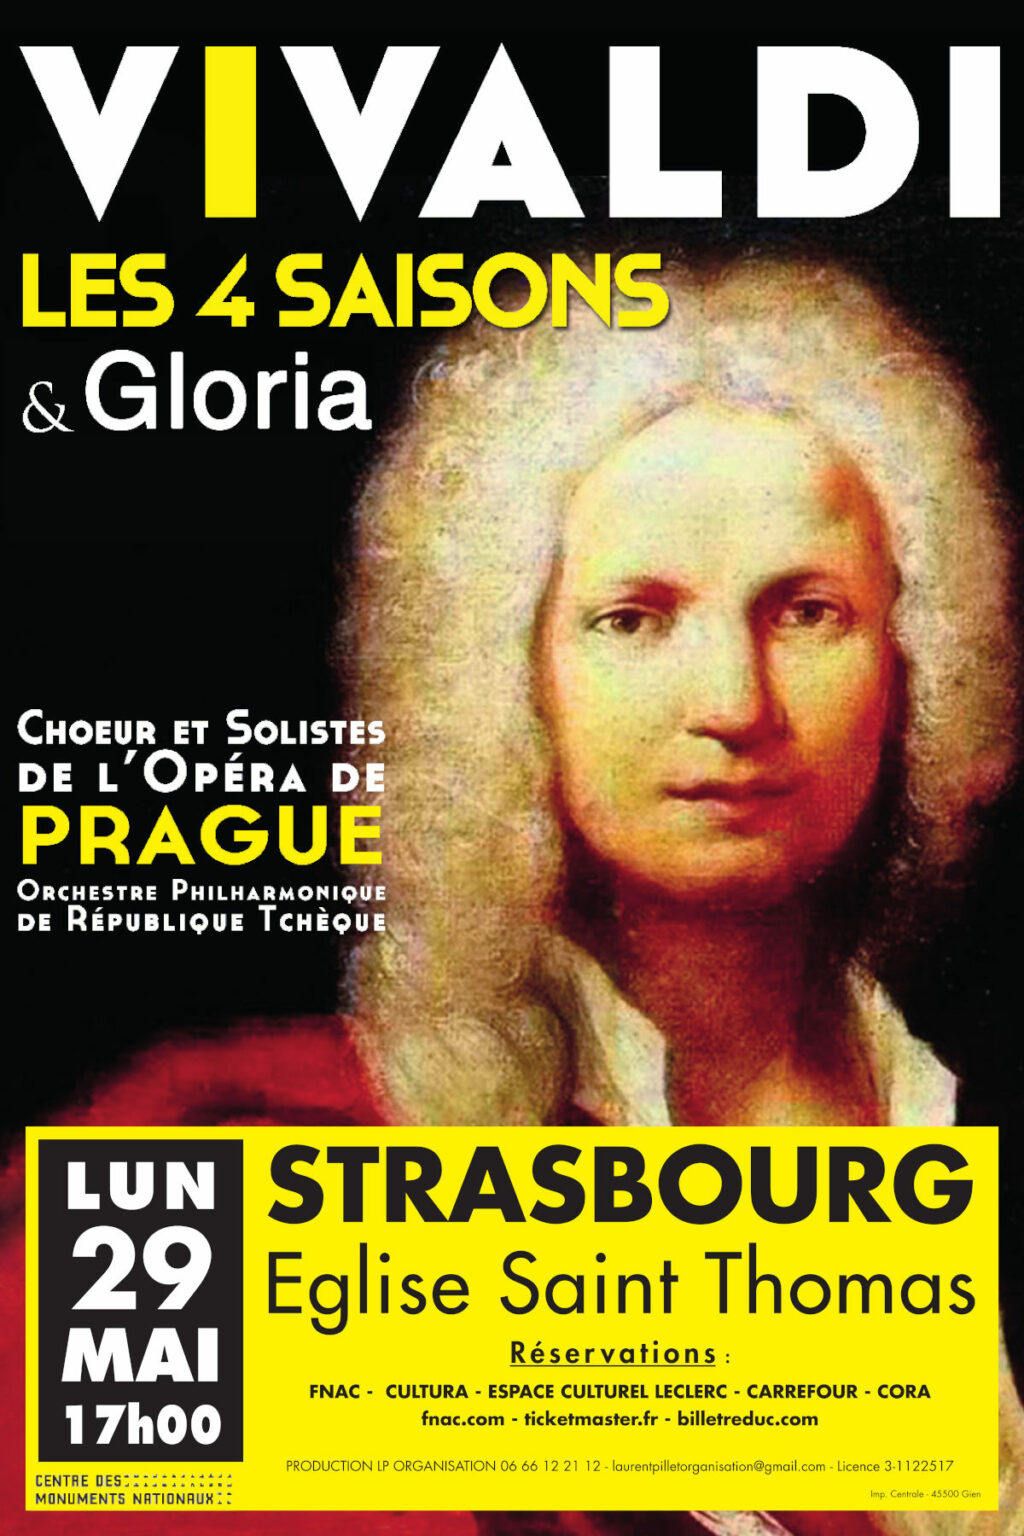 Concert Vivaldi Strasbourg